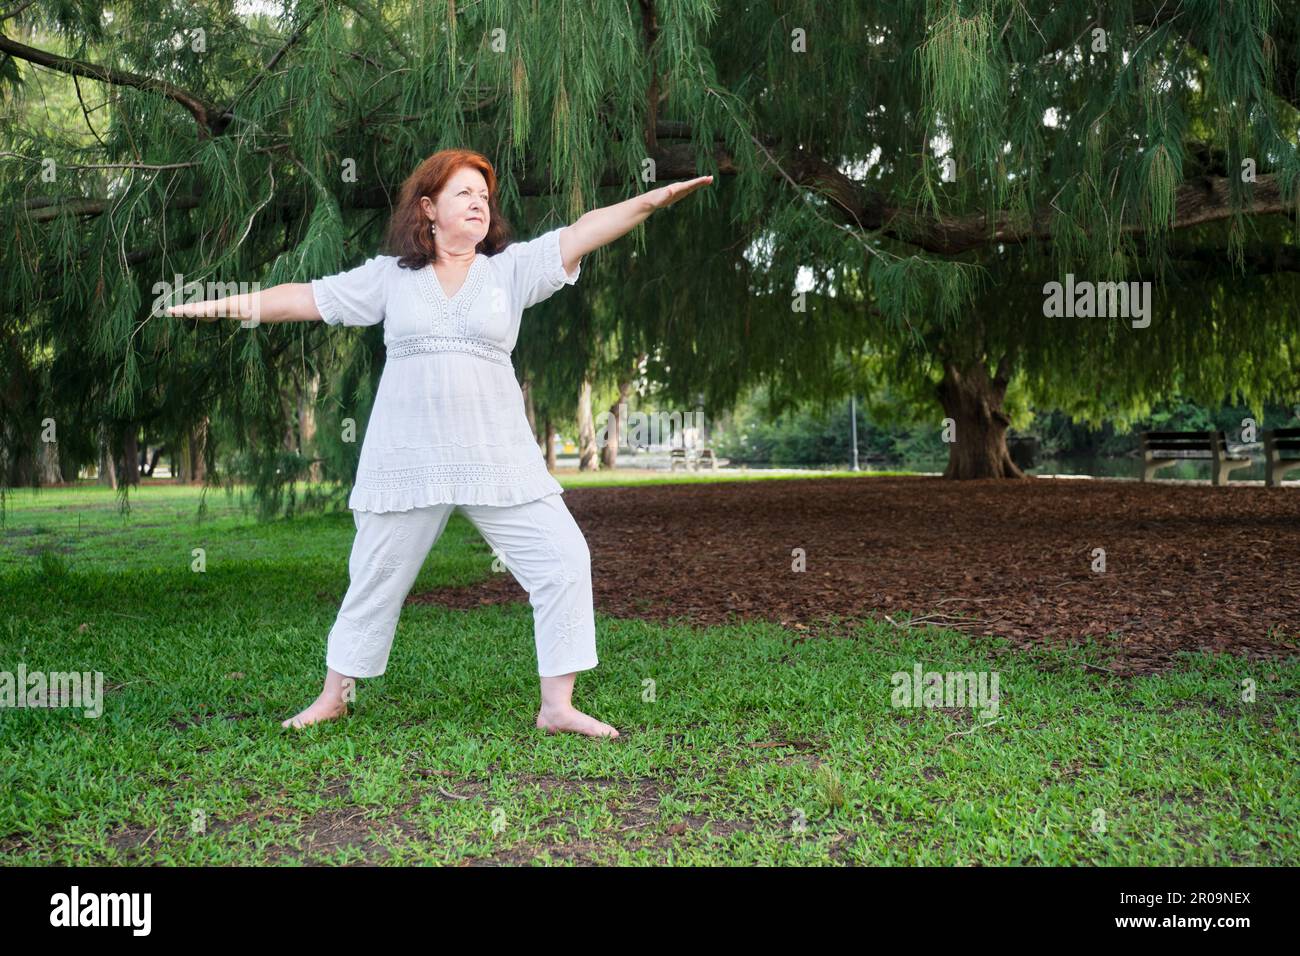 Porträt einer erwachsenen hispanischen Frau in weißer Kleidung, die im Park Yoga praktiziert. Konzepte: Wellness, Vitalität, aktiver und gesunder Lebensstil. Stockfoto